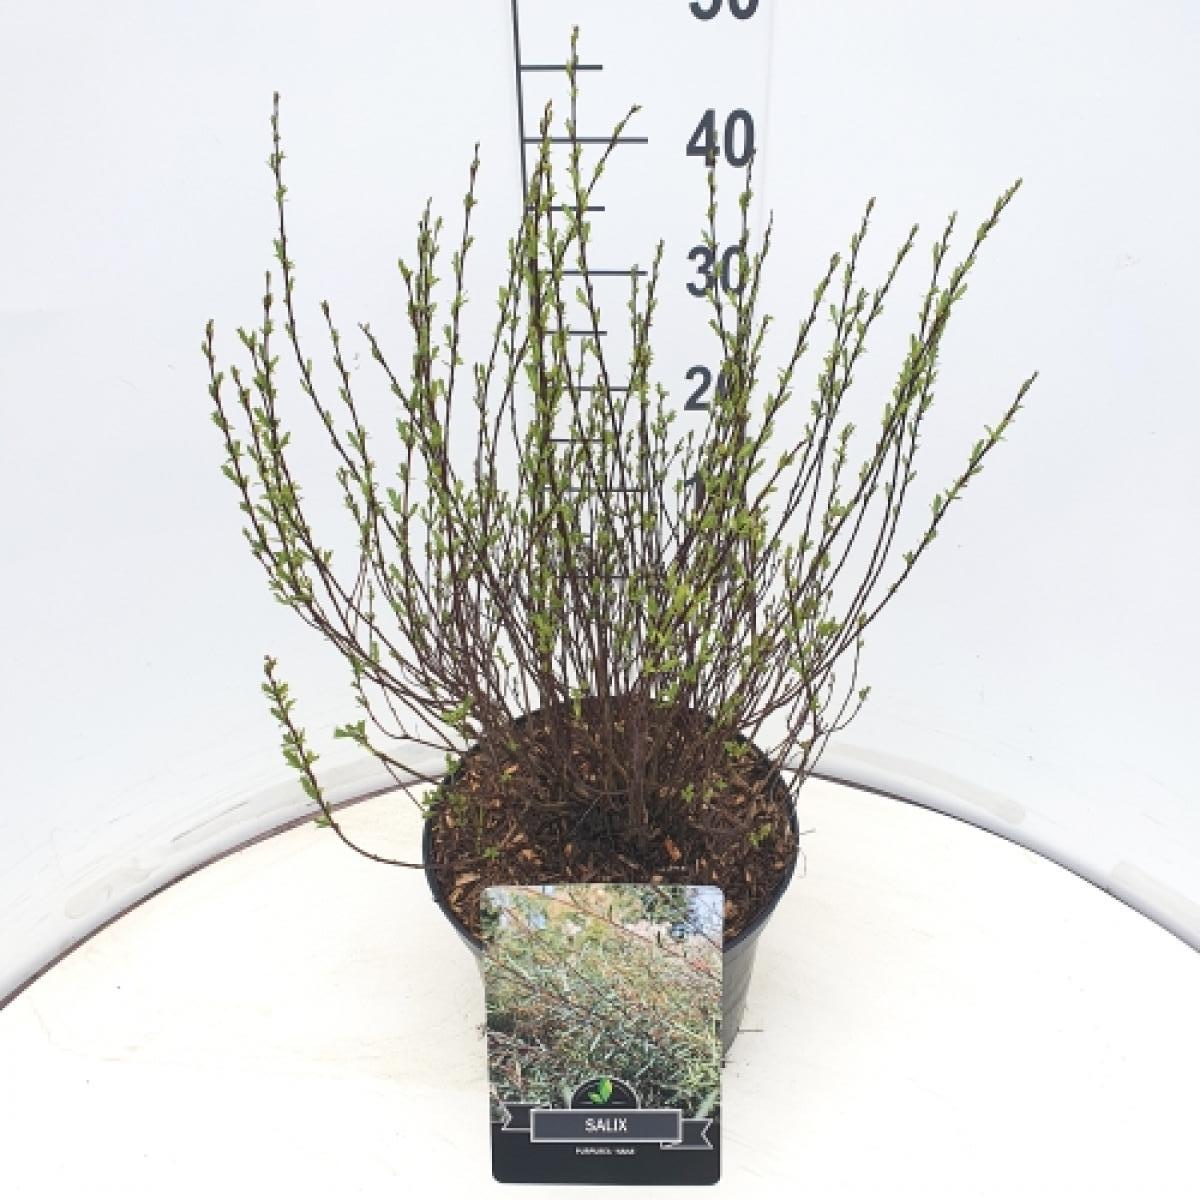 Salix purpurea 'Nana' C10 30/40